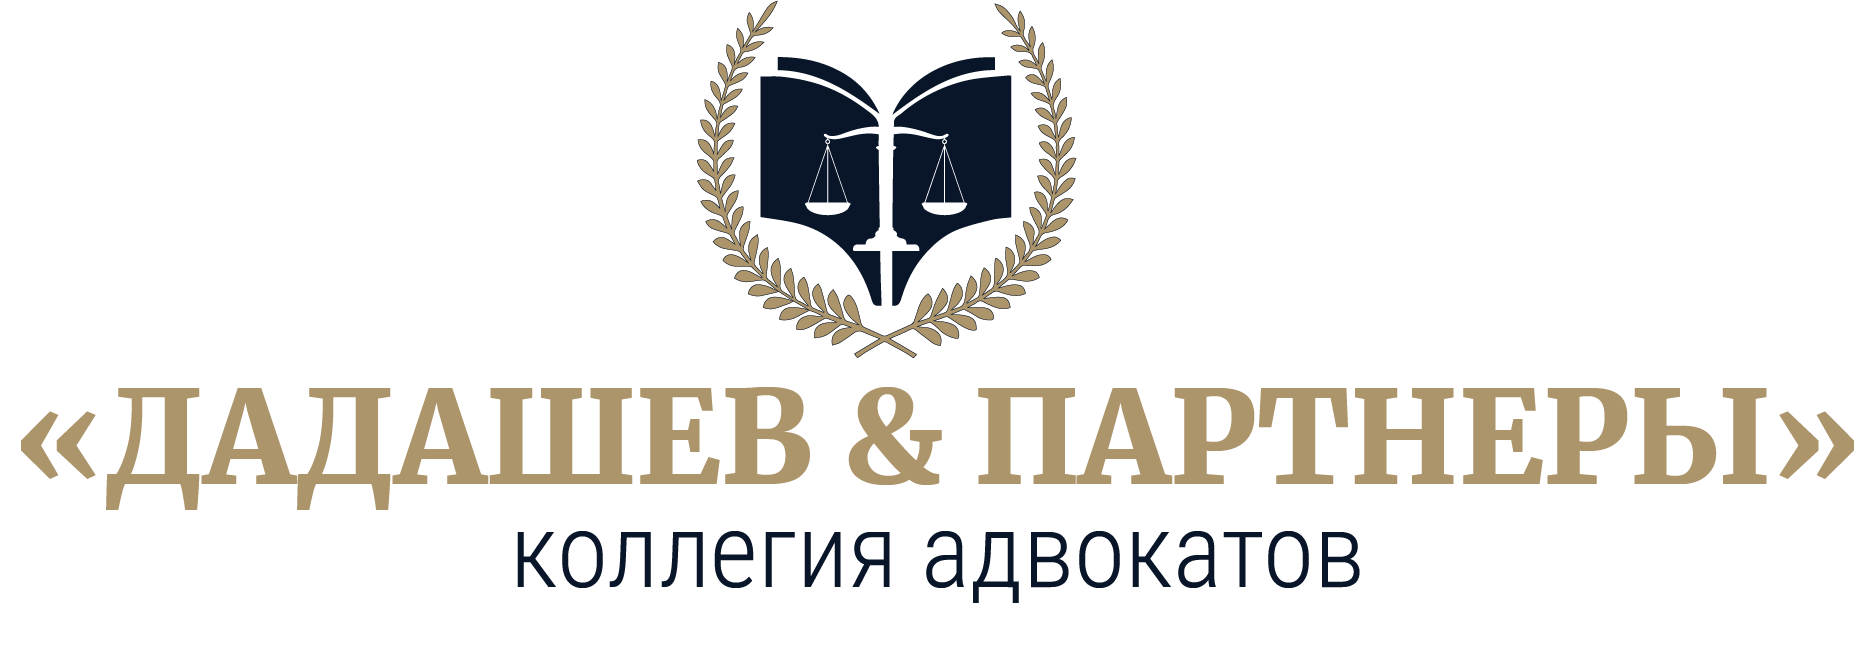 Коллегия адвокатов "Дадашев & Партнеры"